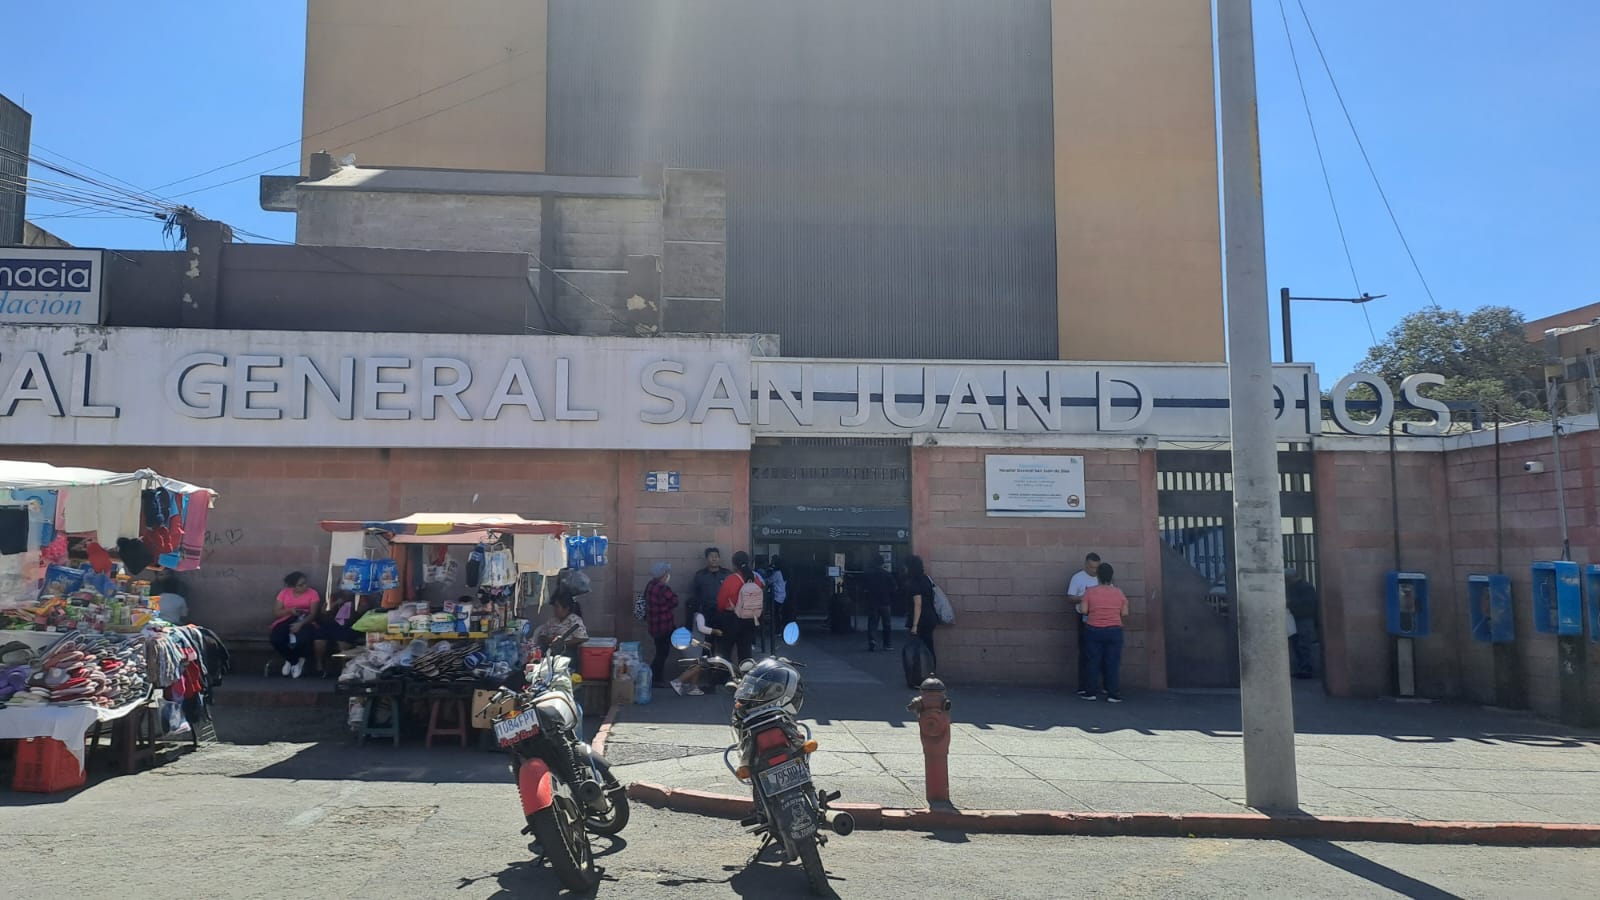 Hospital General San Juan de Dios